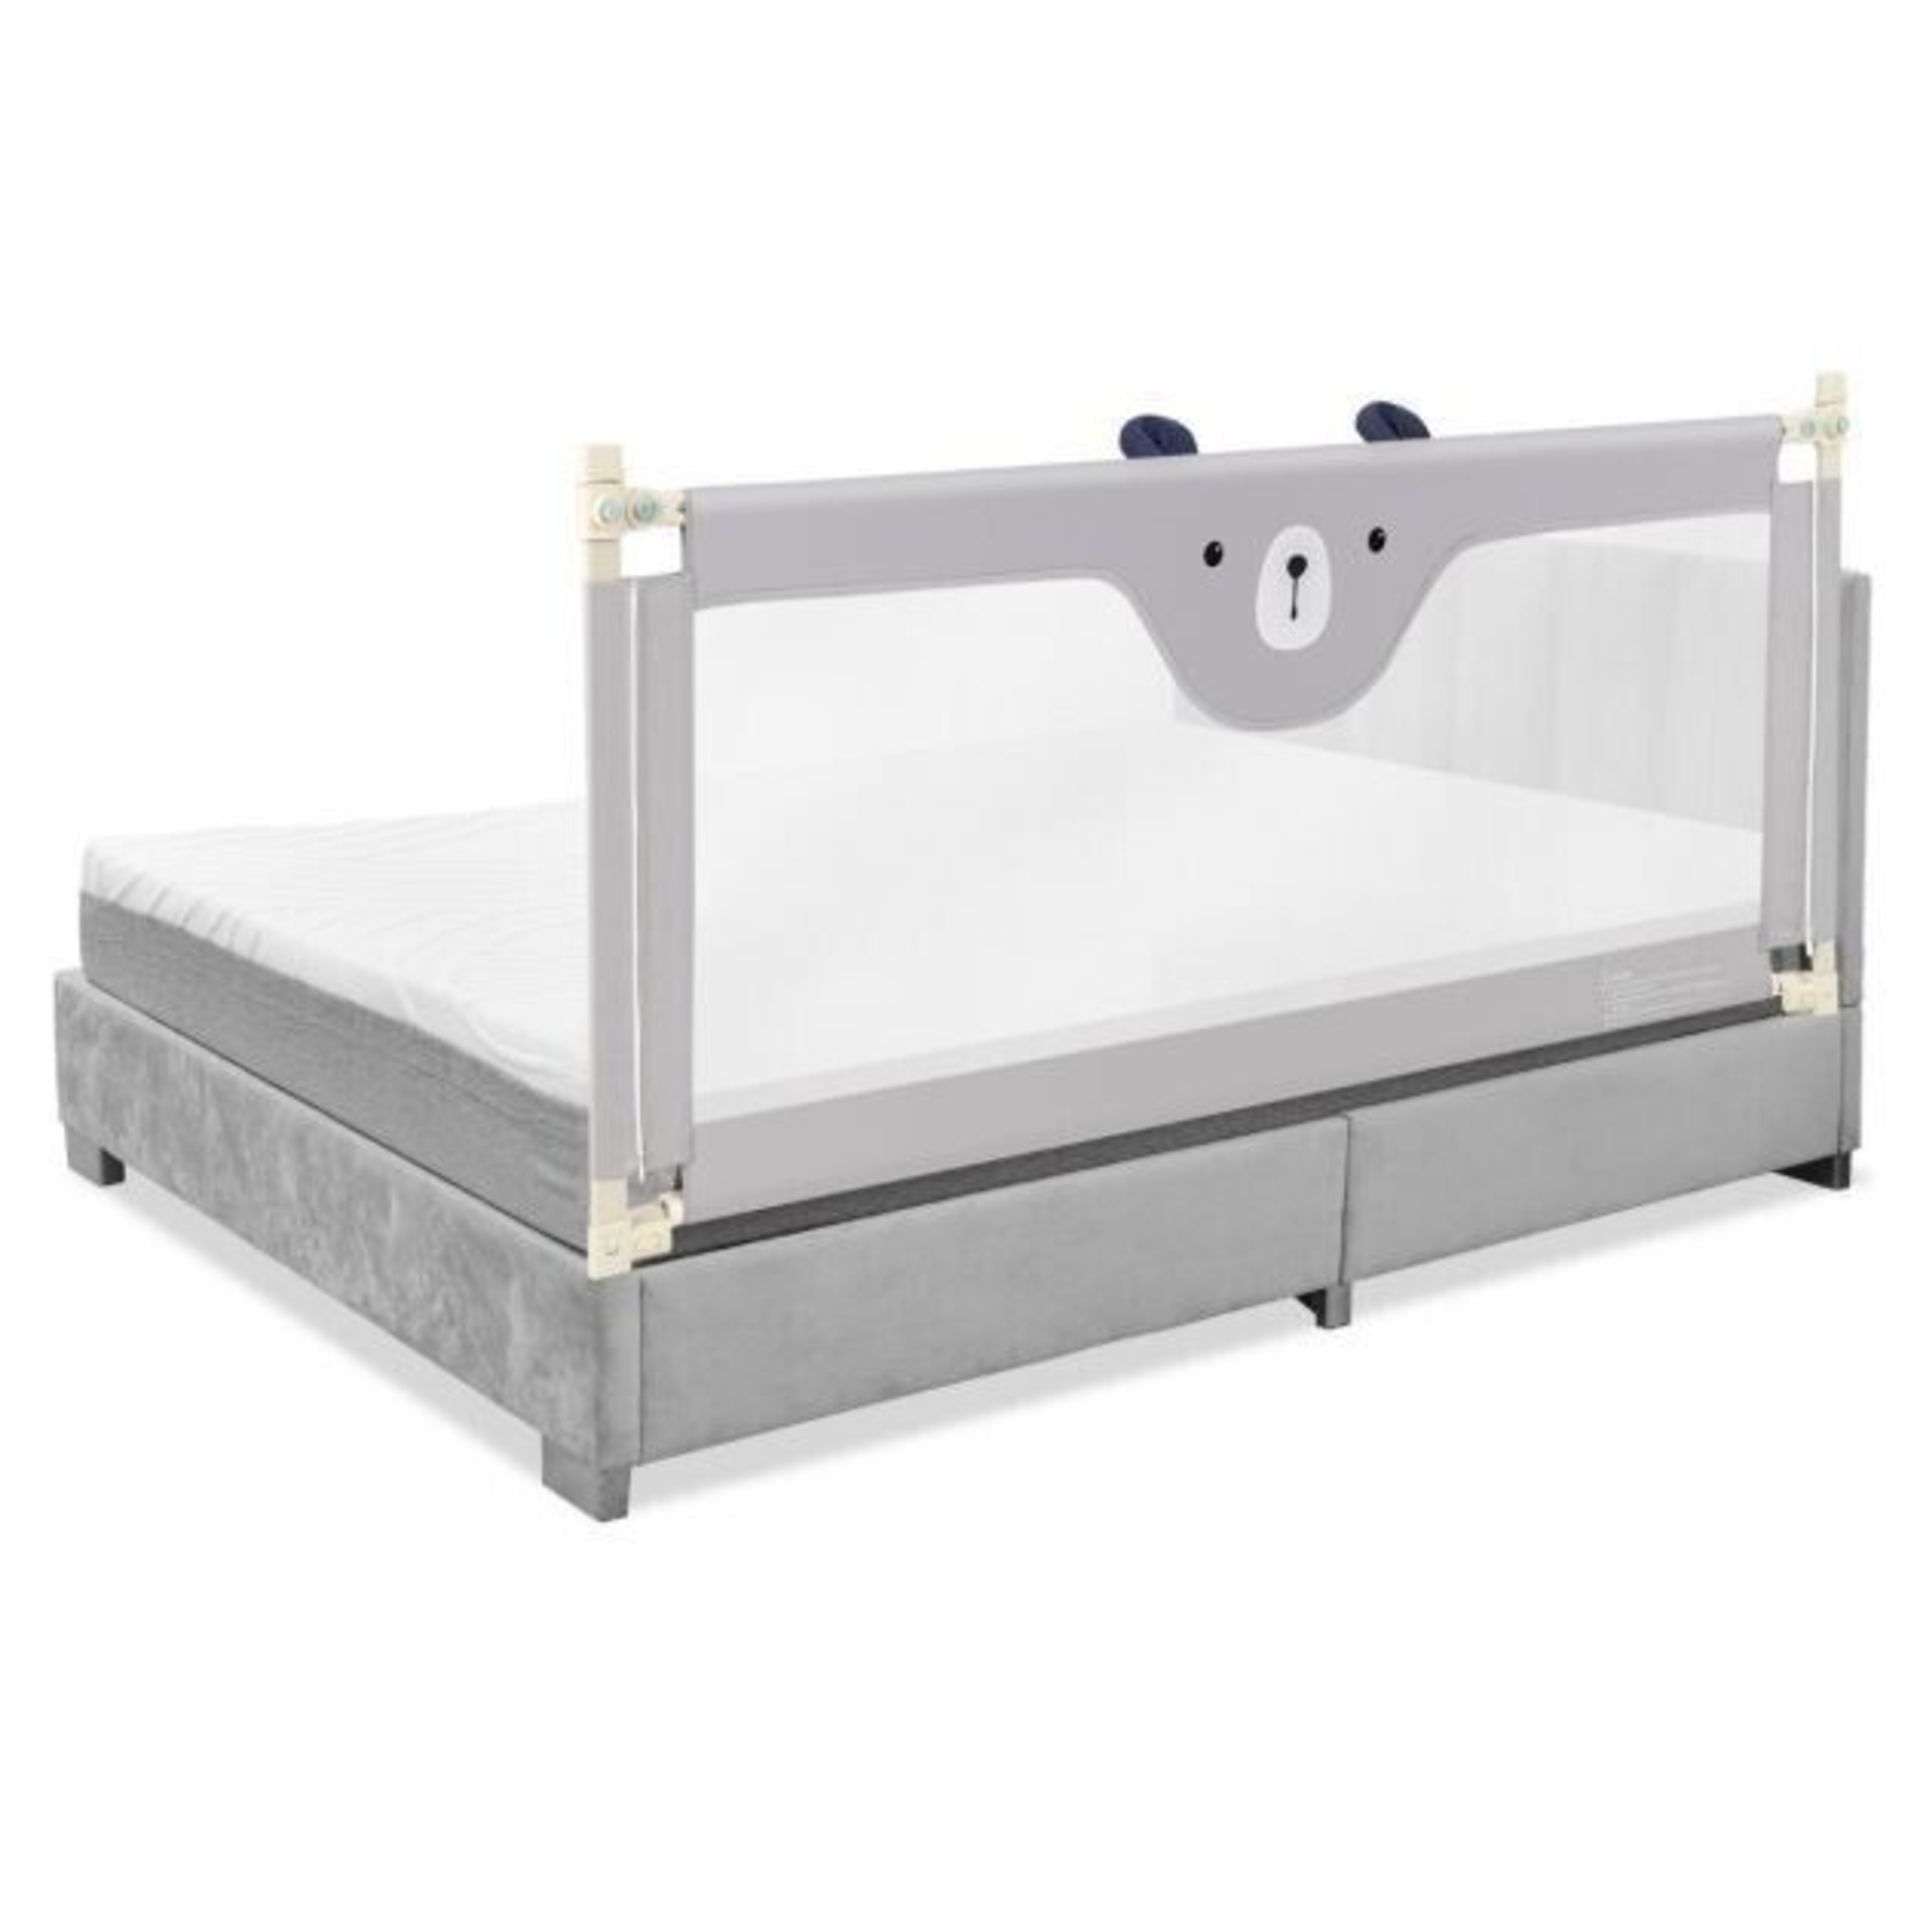 69-inch Toddler Bed Guard - ER53